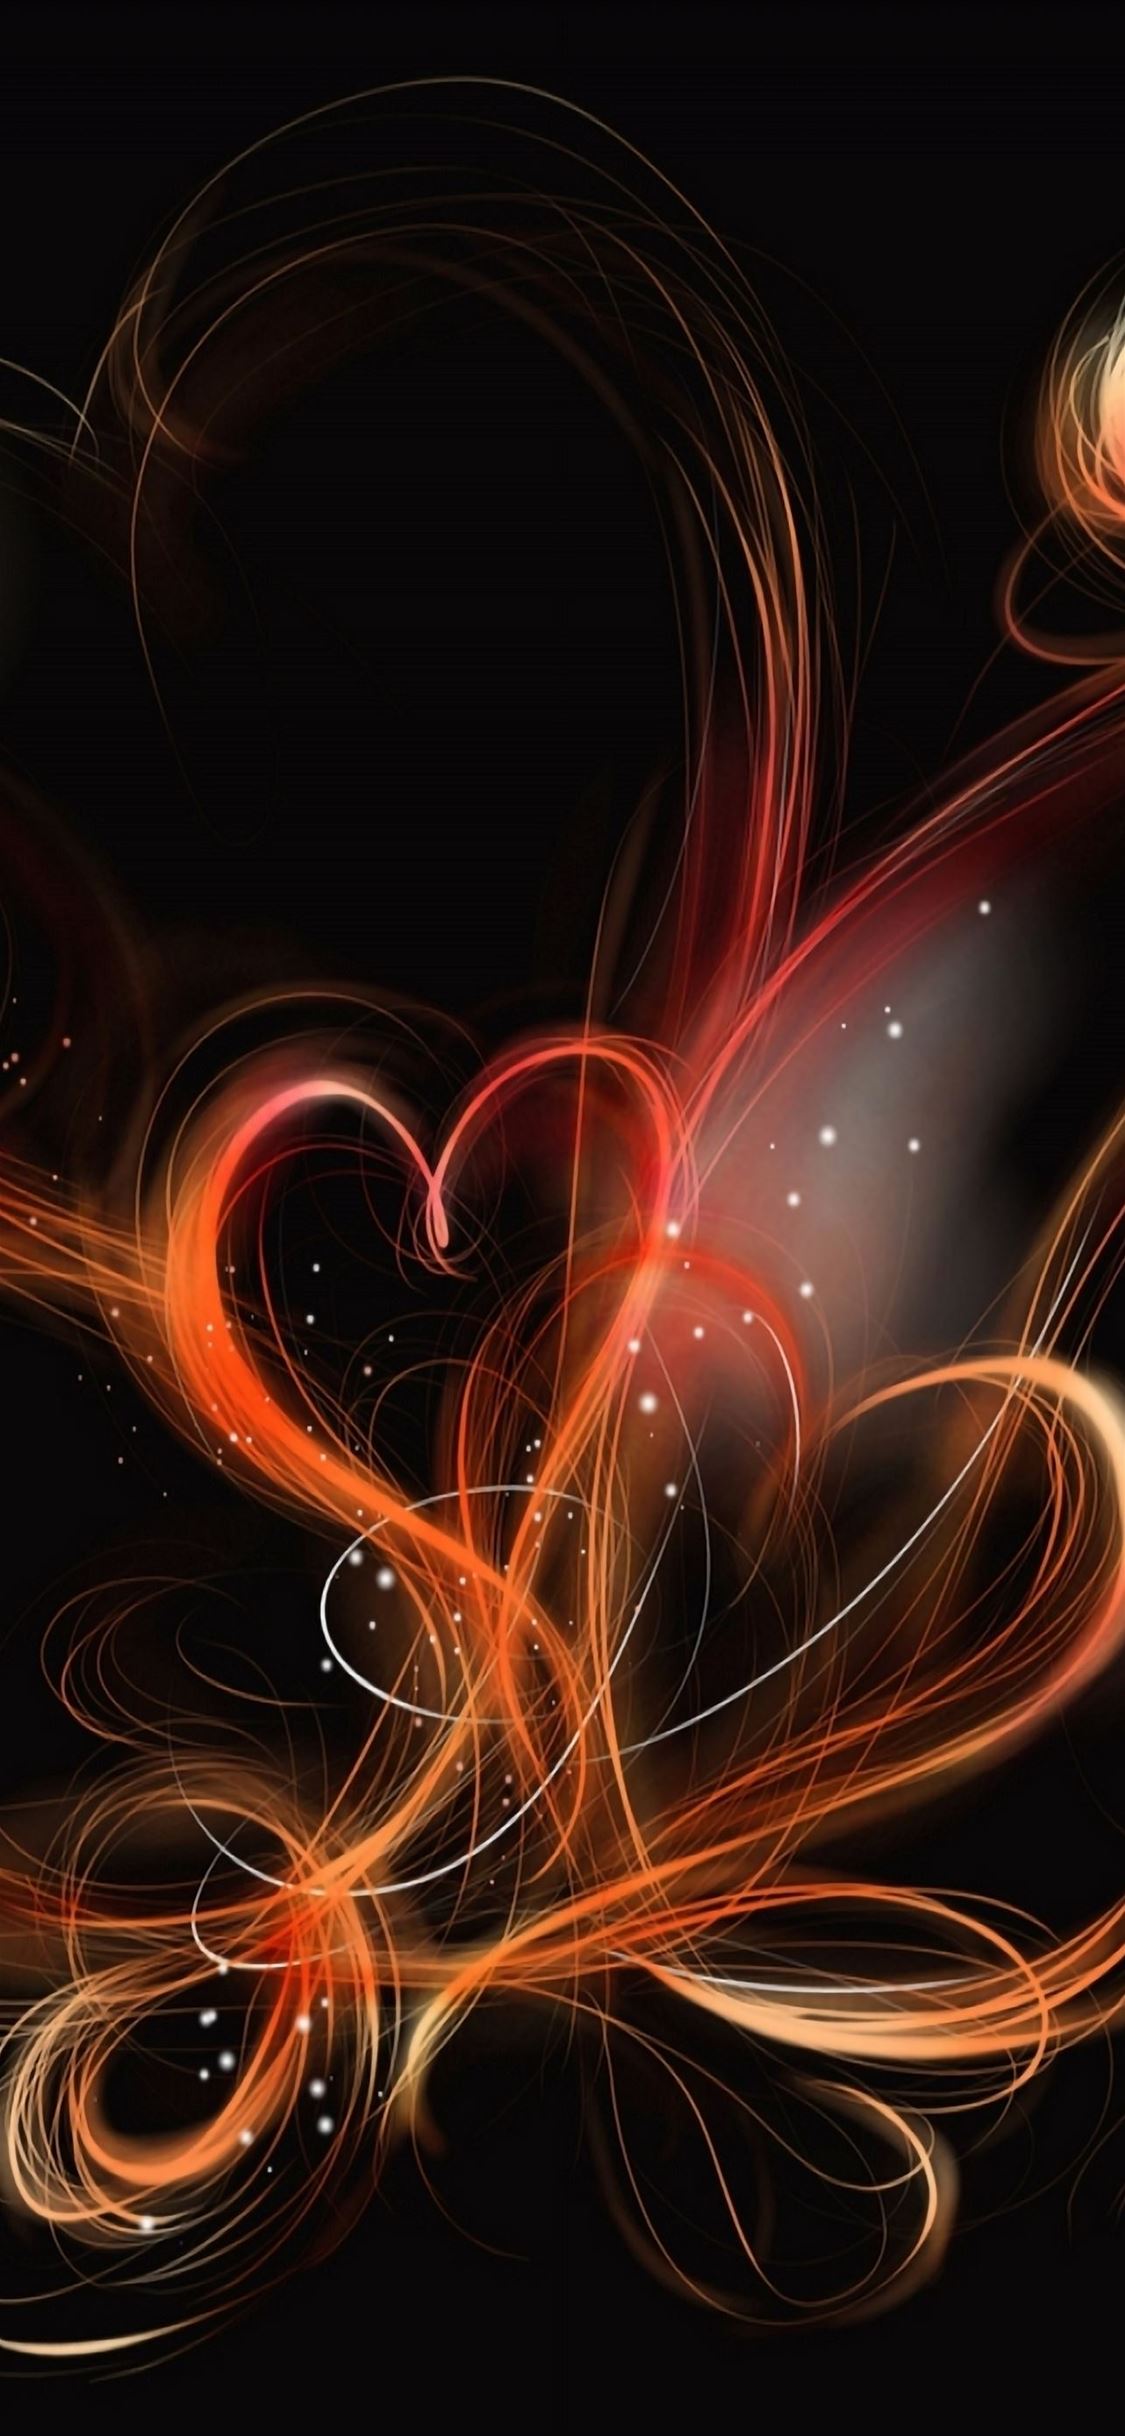 Heart Designs iPhone wallpaper 